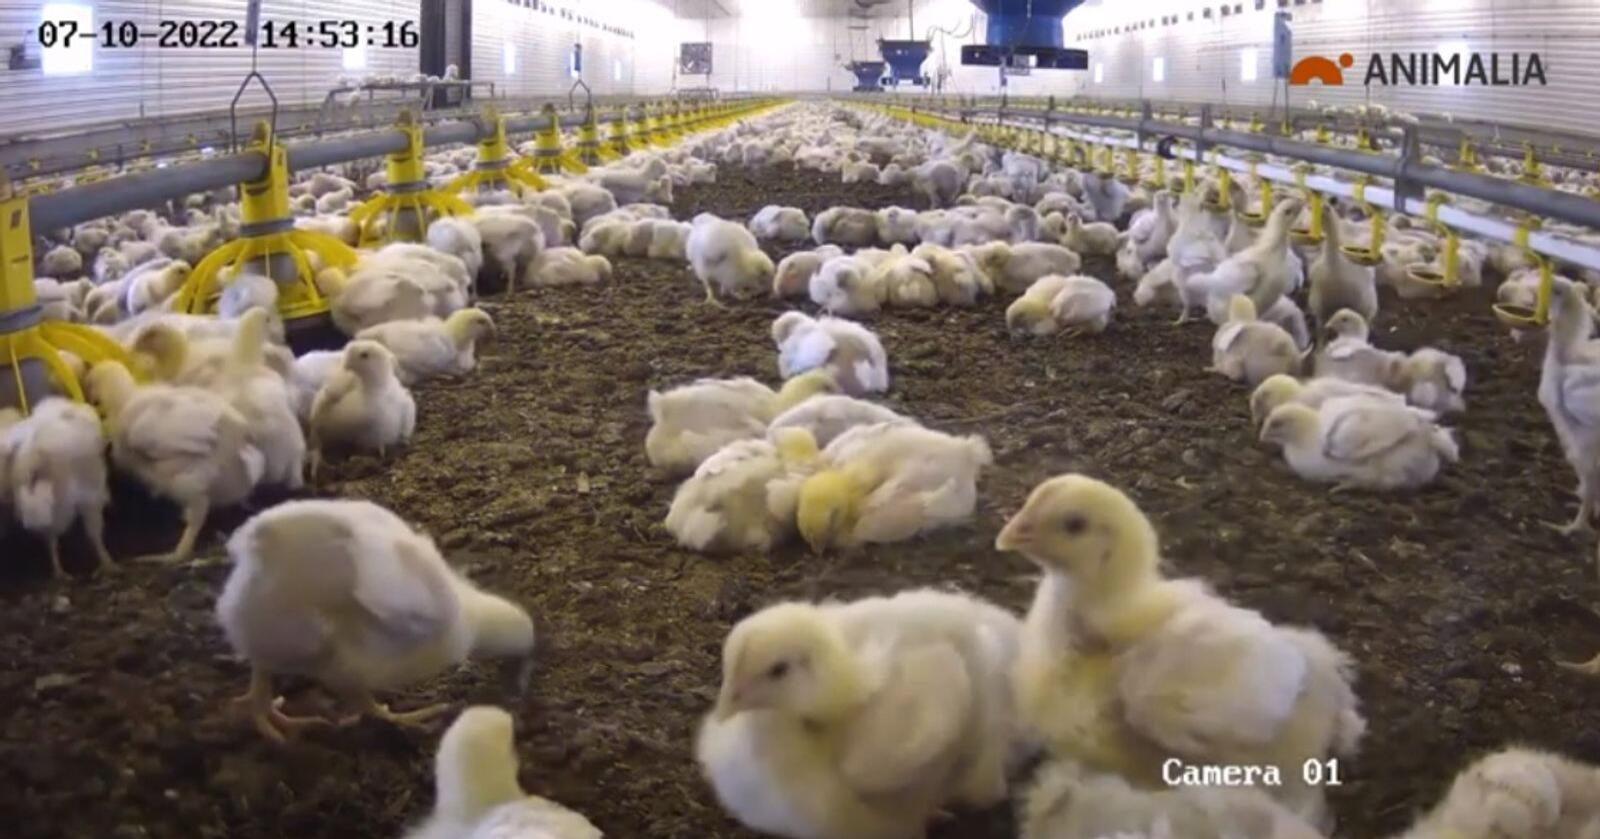 19.500 daggamle kyllinger av hybriden Ross 308 ble satt inn i kyllinghuset til Lars-Otto Grundt og filmet døgnet rundt. Foto:Skjermbilde/Animalia 